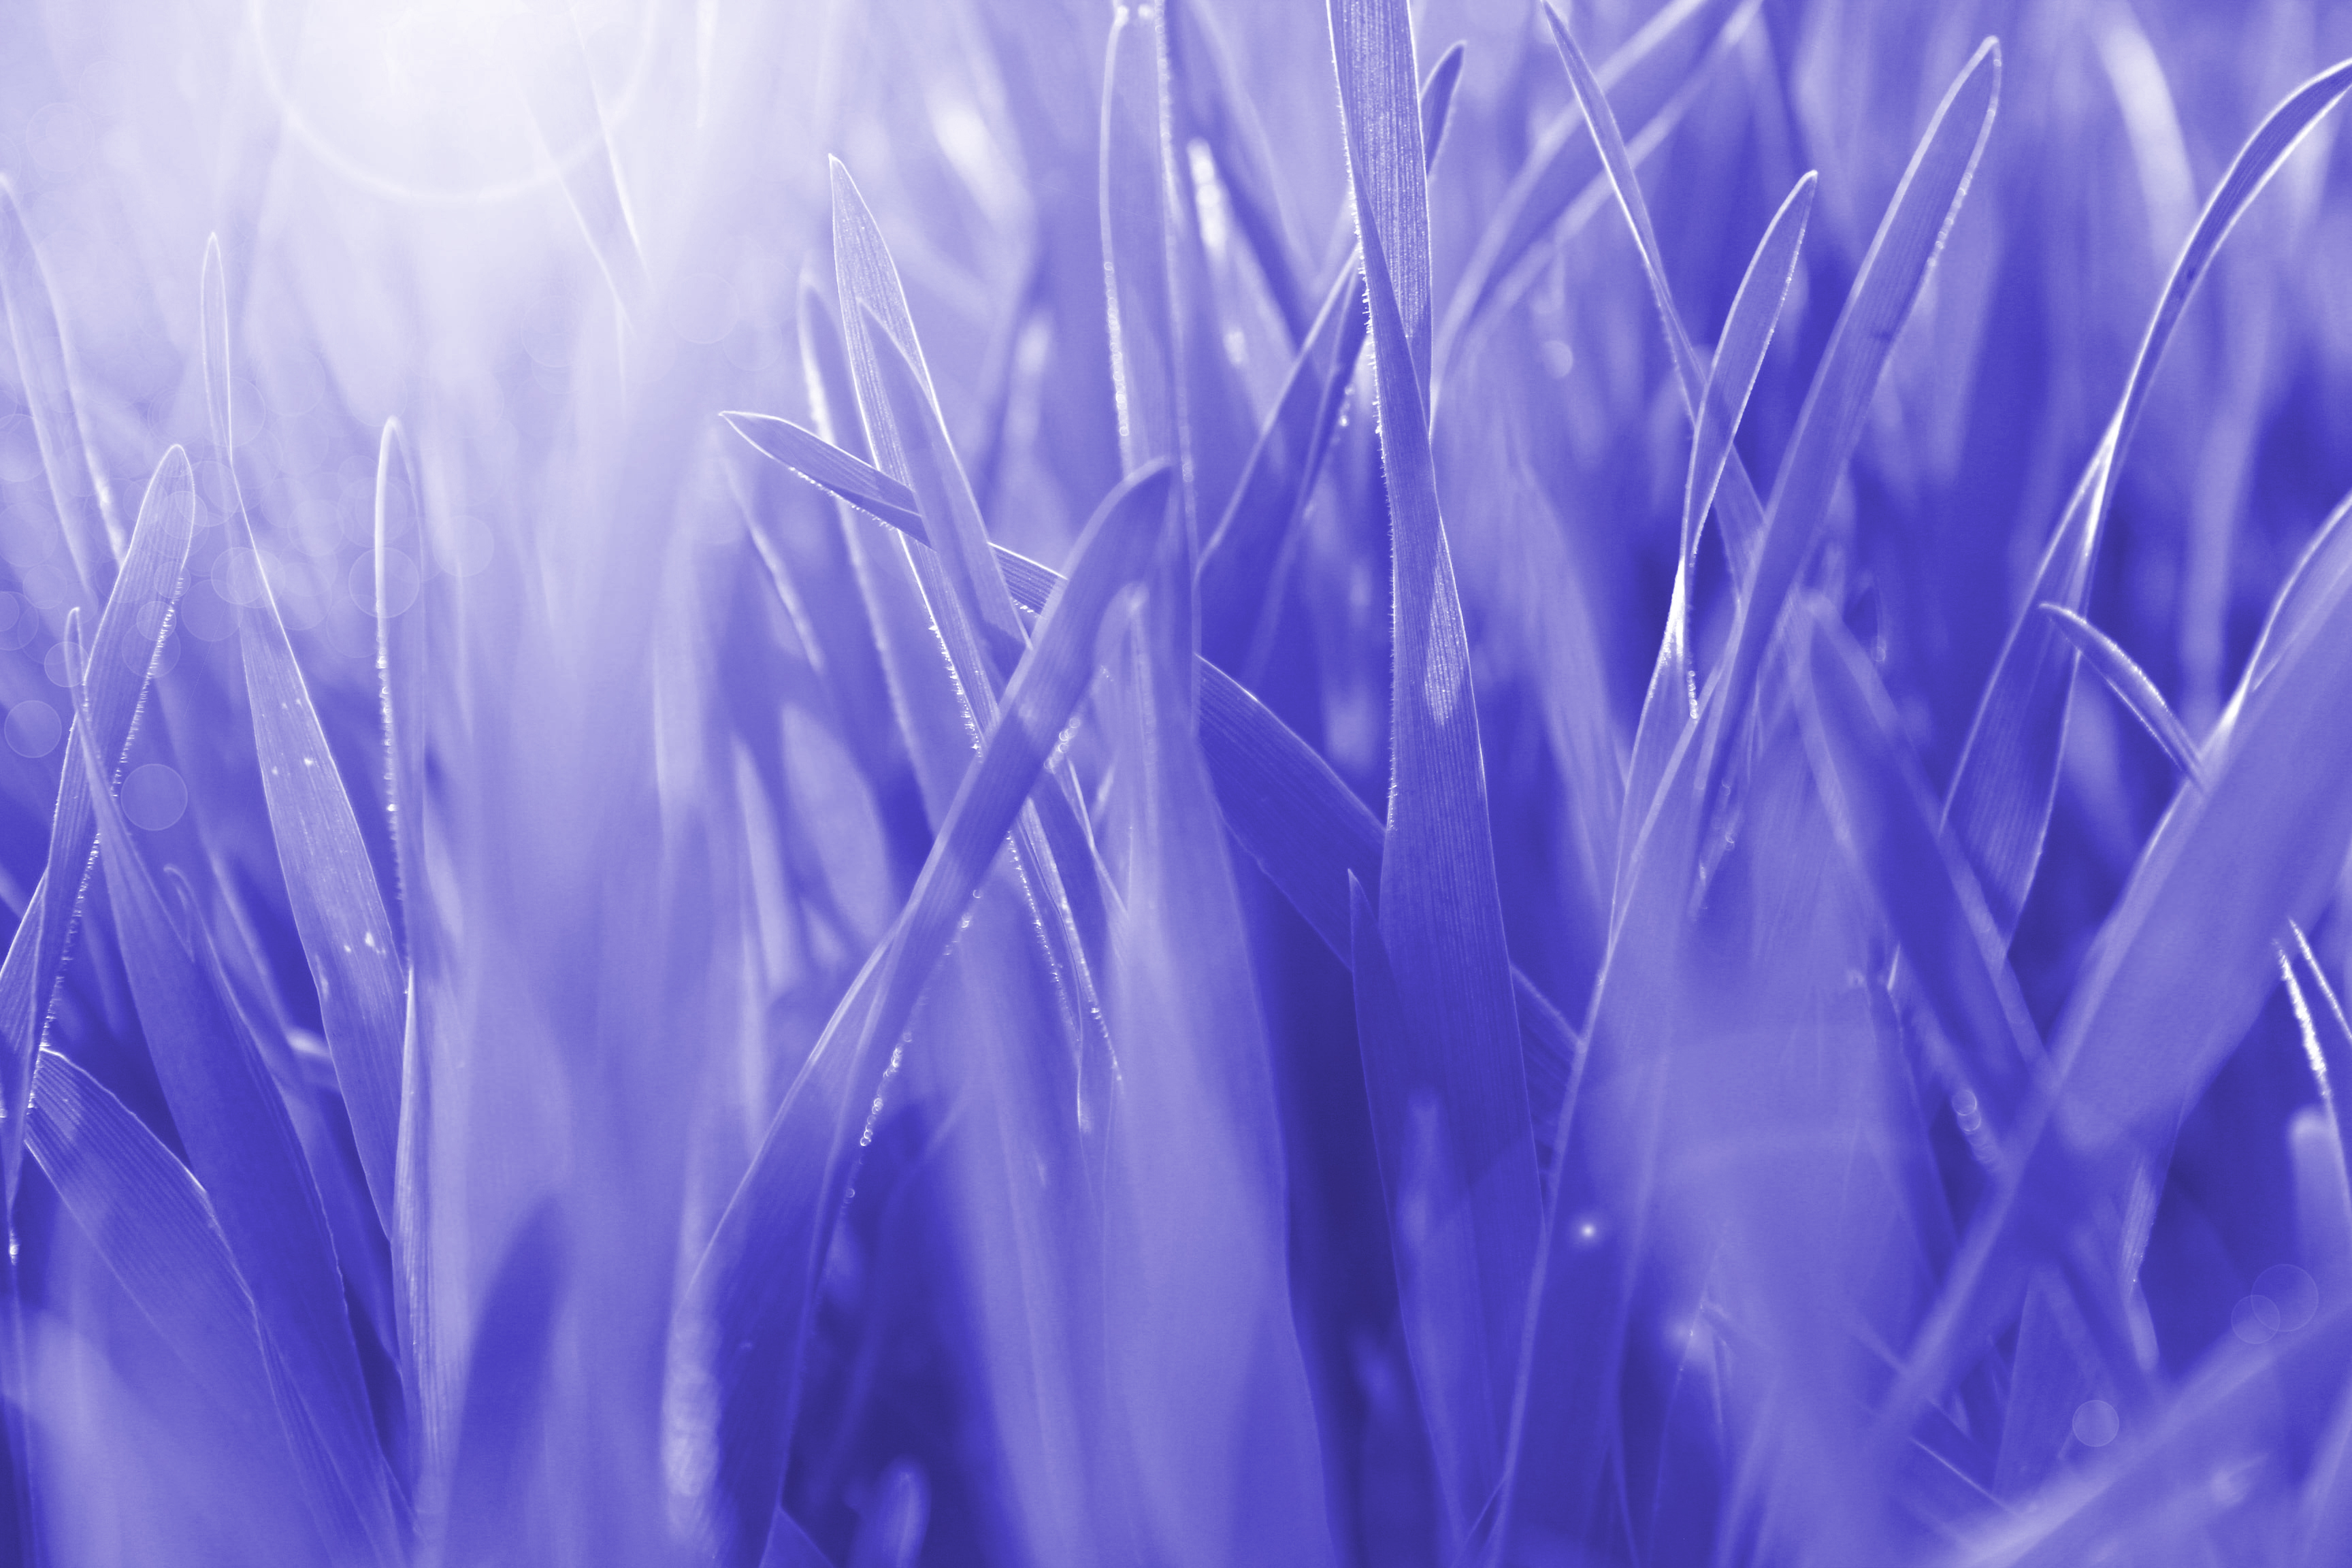 General 3456x2304 pastel white purple grass pale